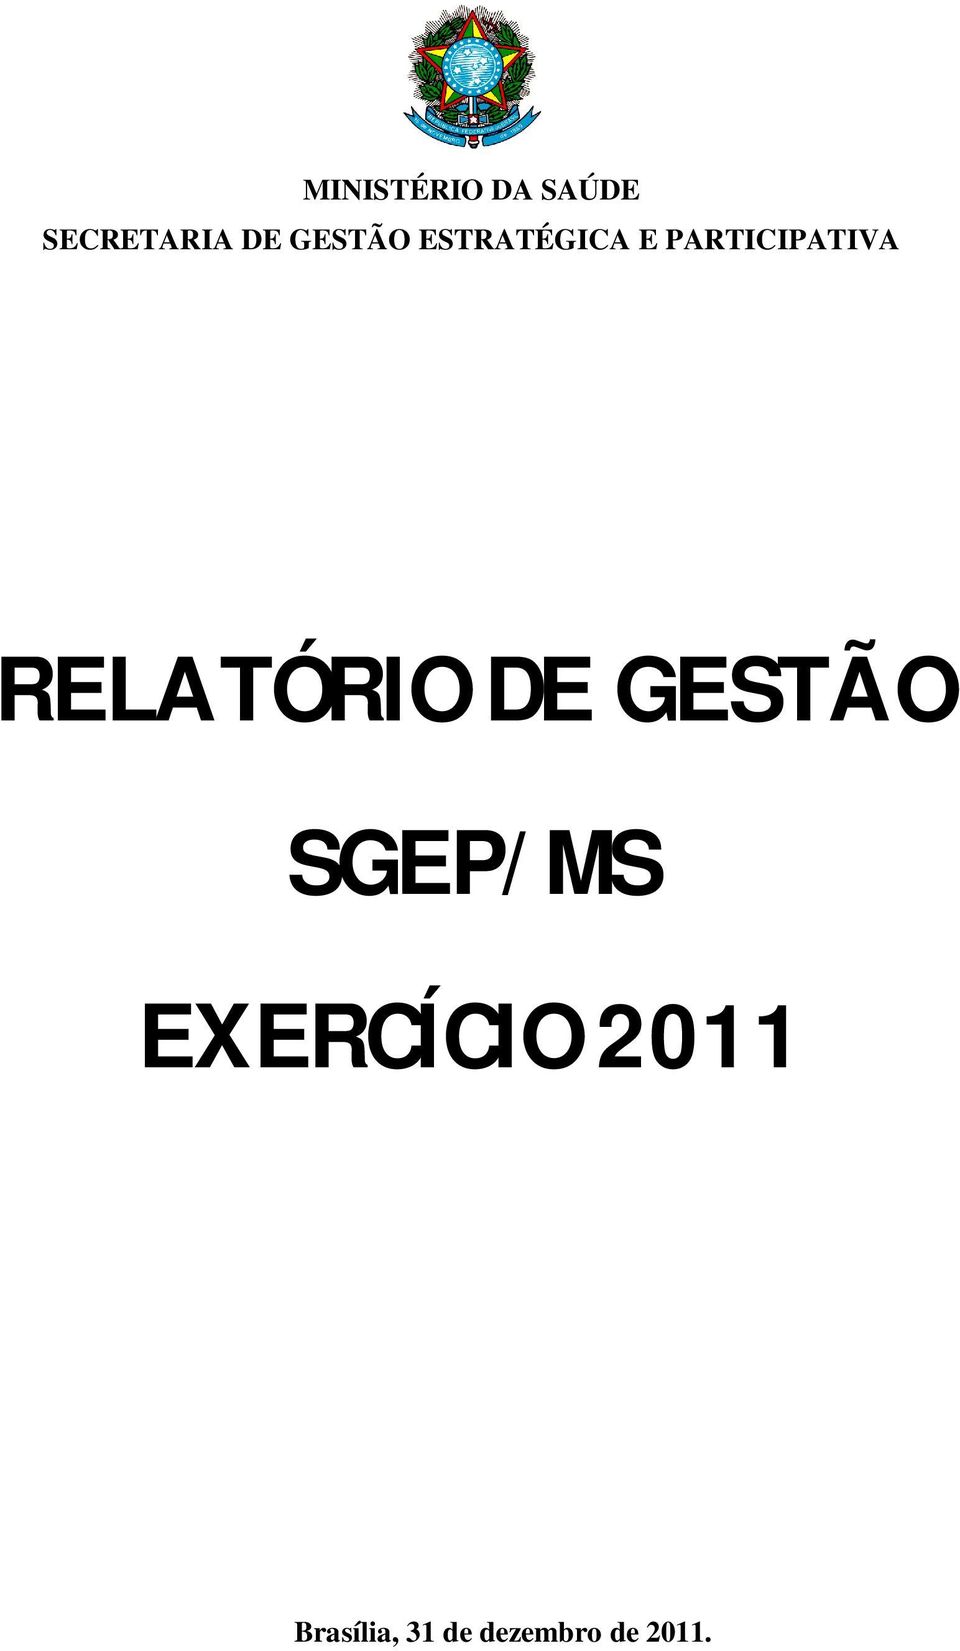 RELATÓRIO DE GESTÃO SGEP/MS